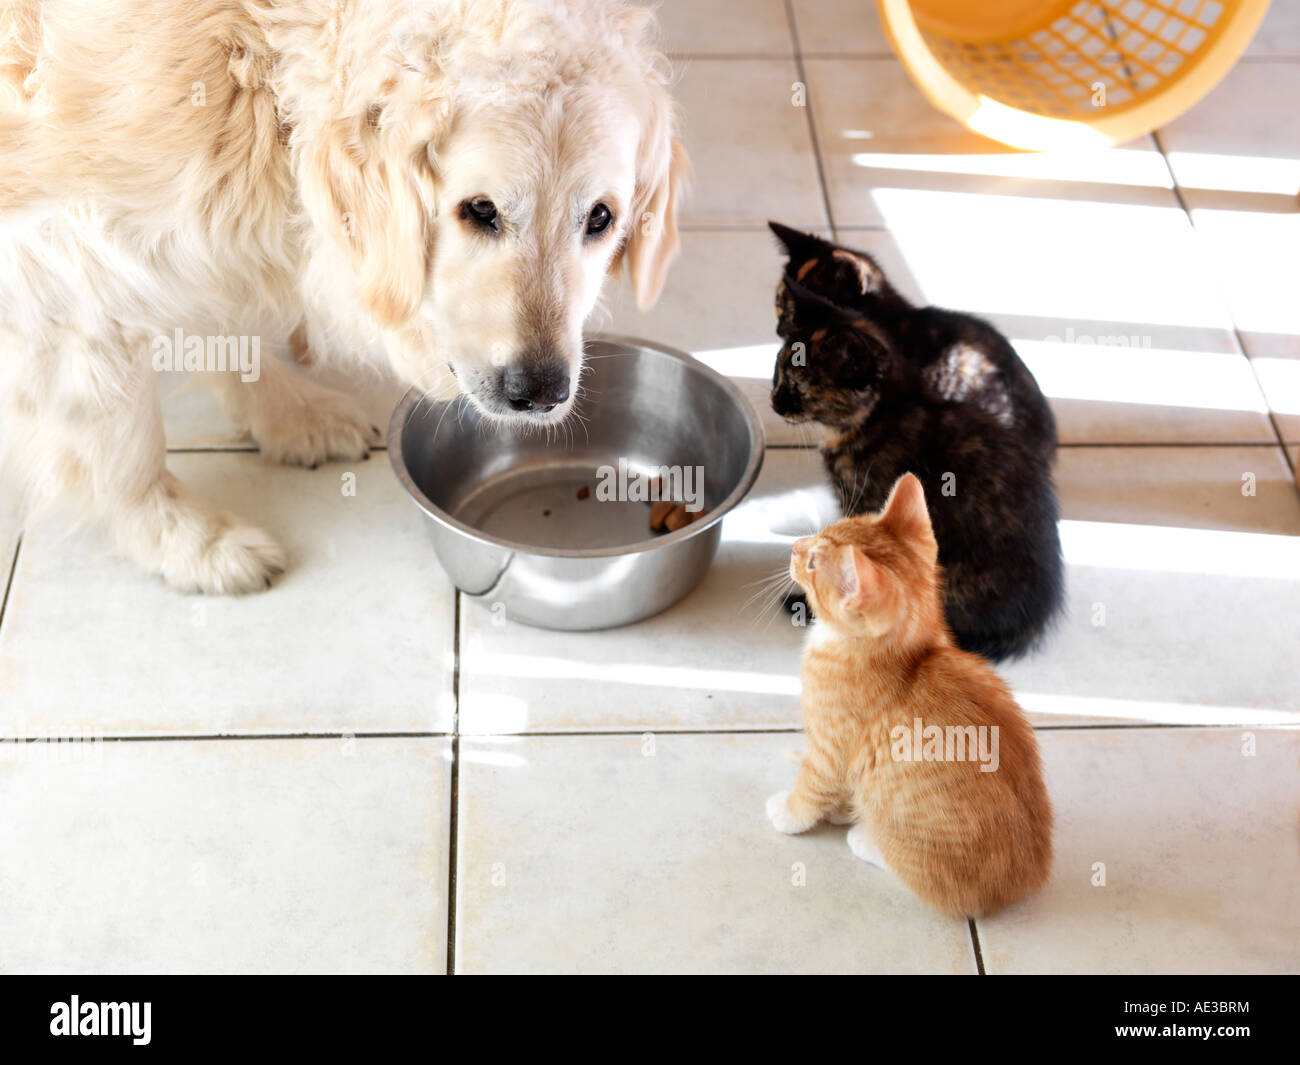 Kittens and Golden Retriever Eating Stock Photo